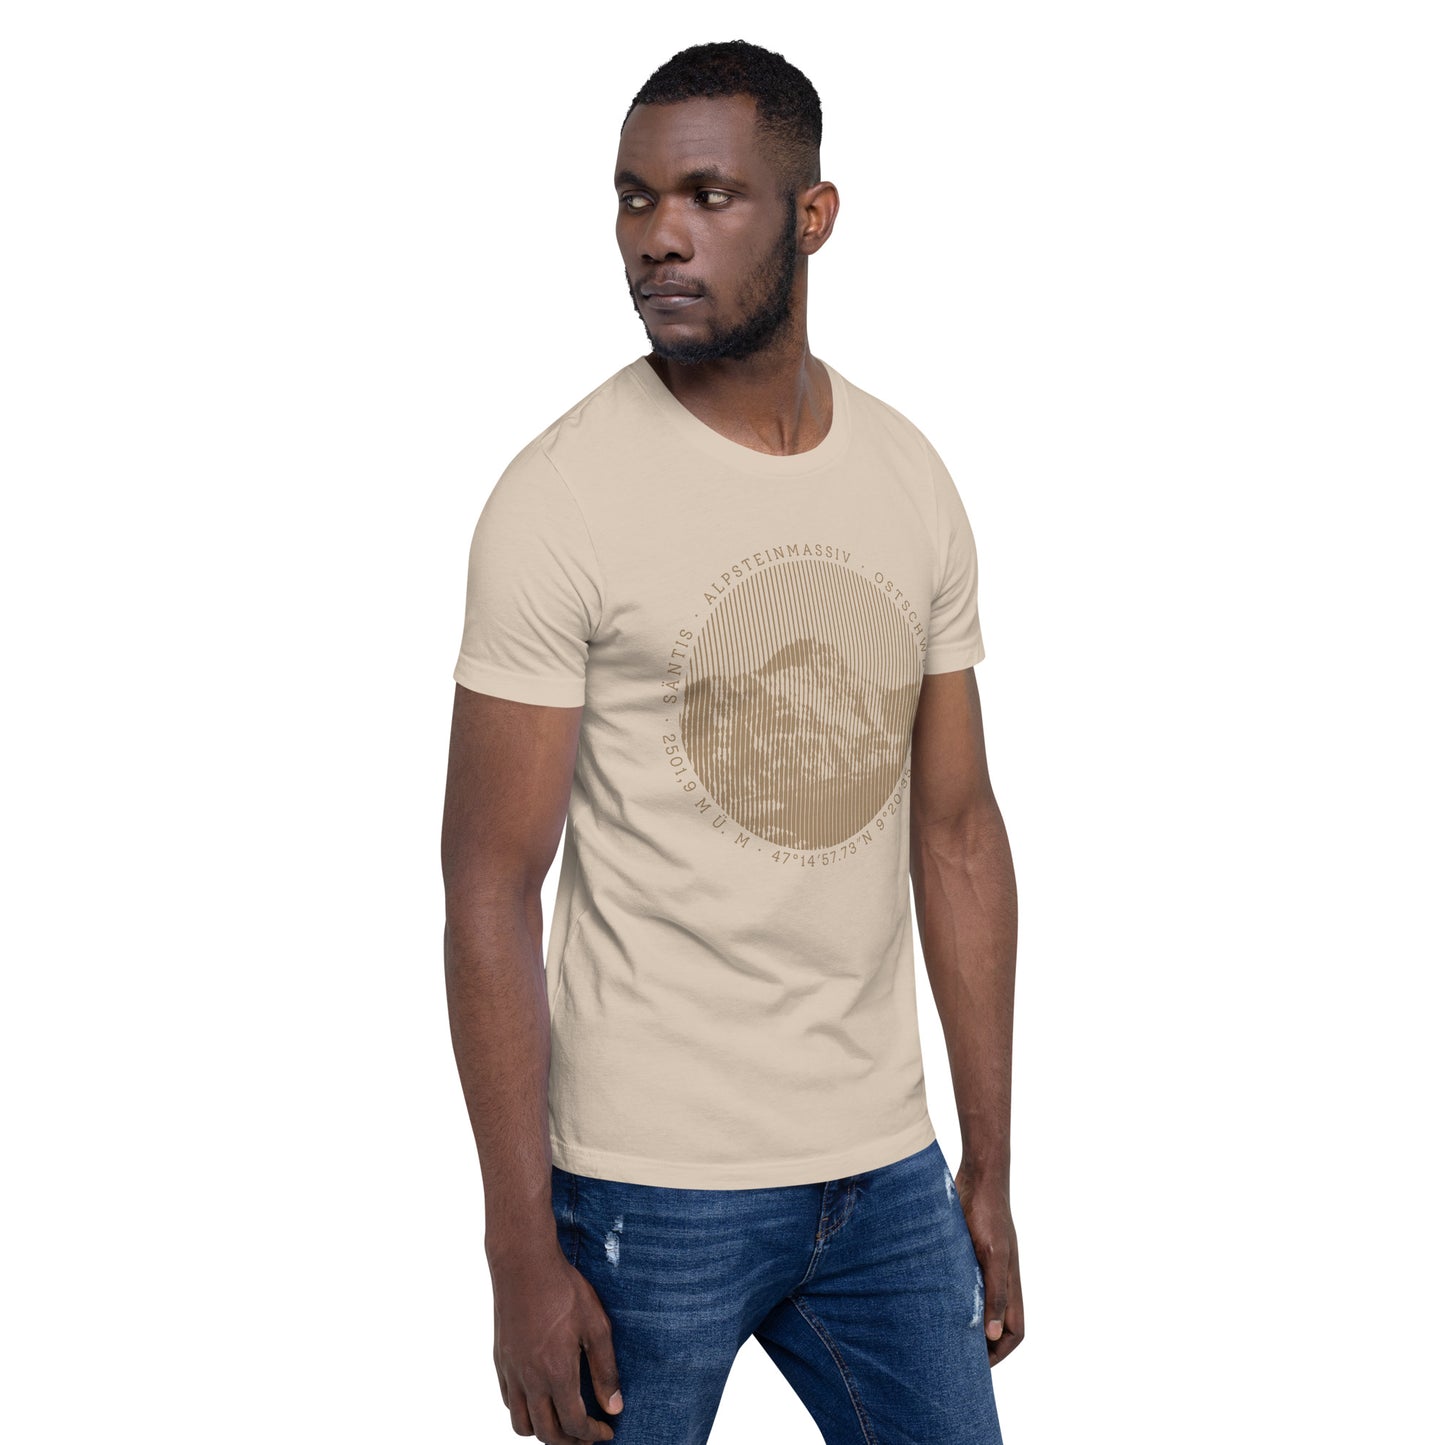 Crèmefarbenes T-Shirt mit Säntis-Aufdruck getragen von einem jungen Herrn